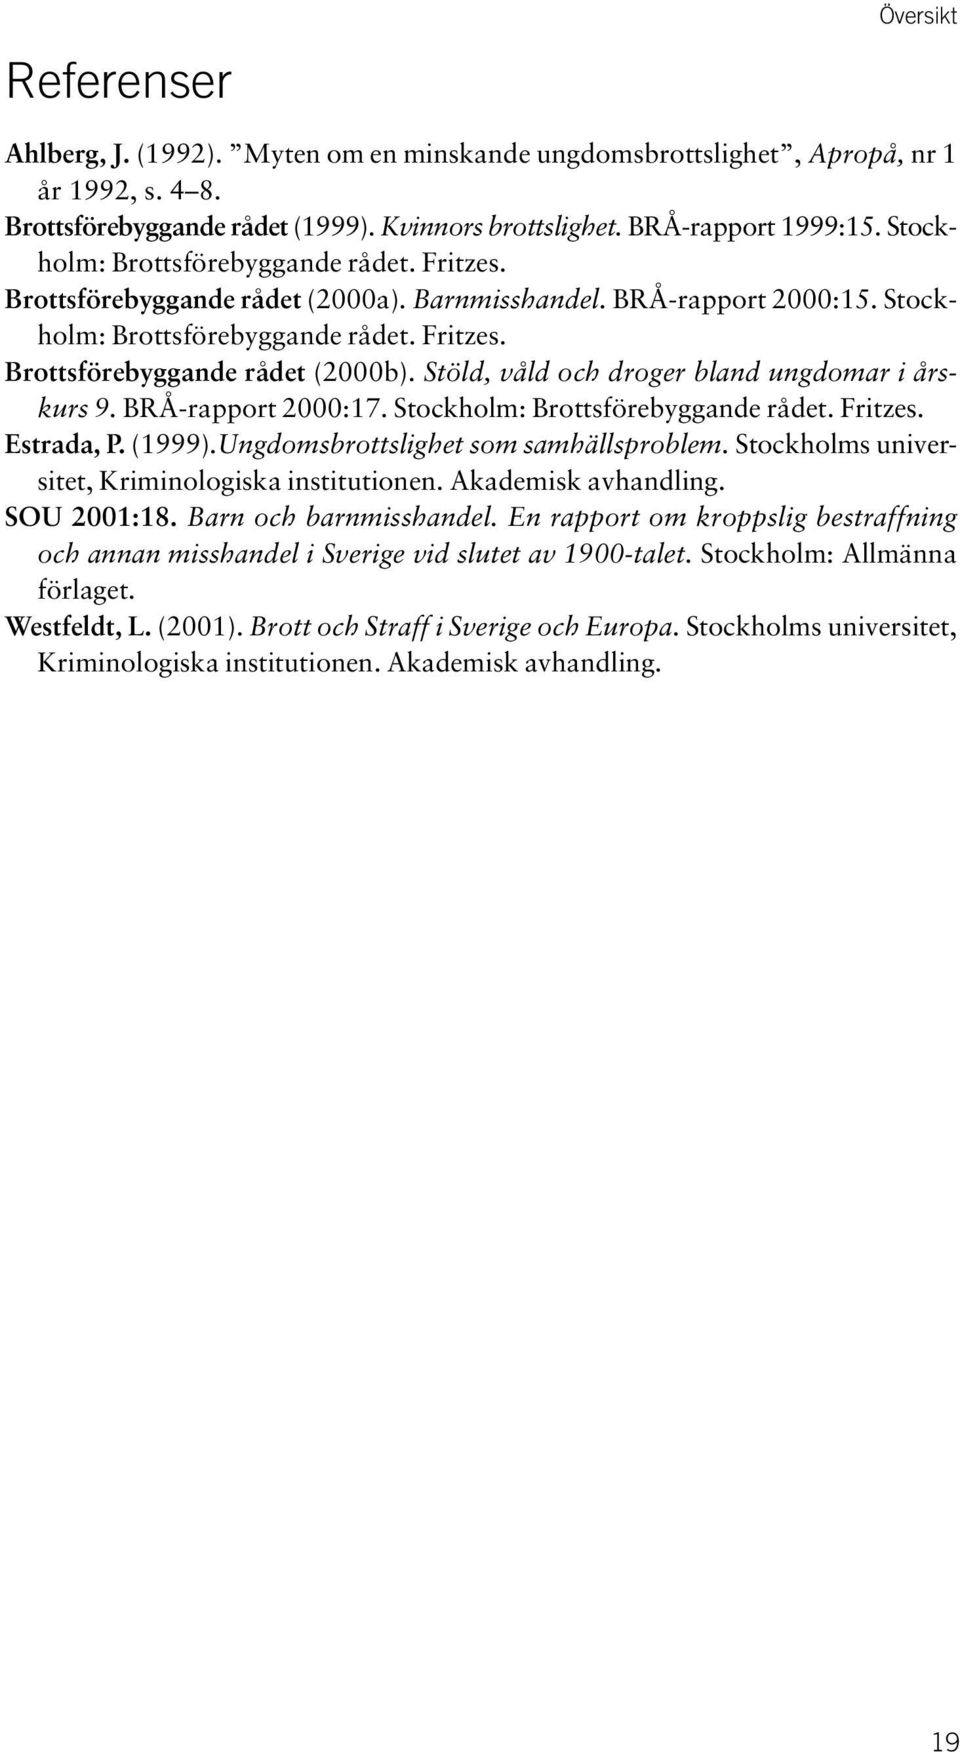 Stöld, våld och droger bland ungdomar i årskurs 9. BRÅ-rapport 2000:17. Stockholm: Brottsförebyggande rådet. Fritzes. Estrada, P. (1999).Ungdomsbrottslighet som samhällsproblem.